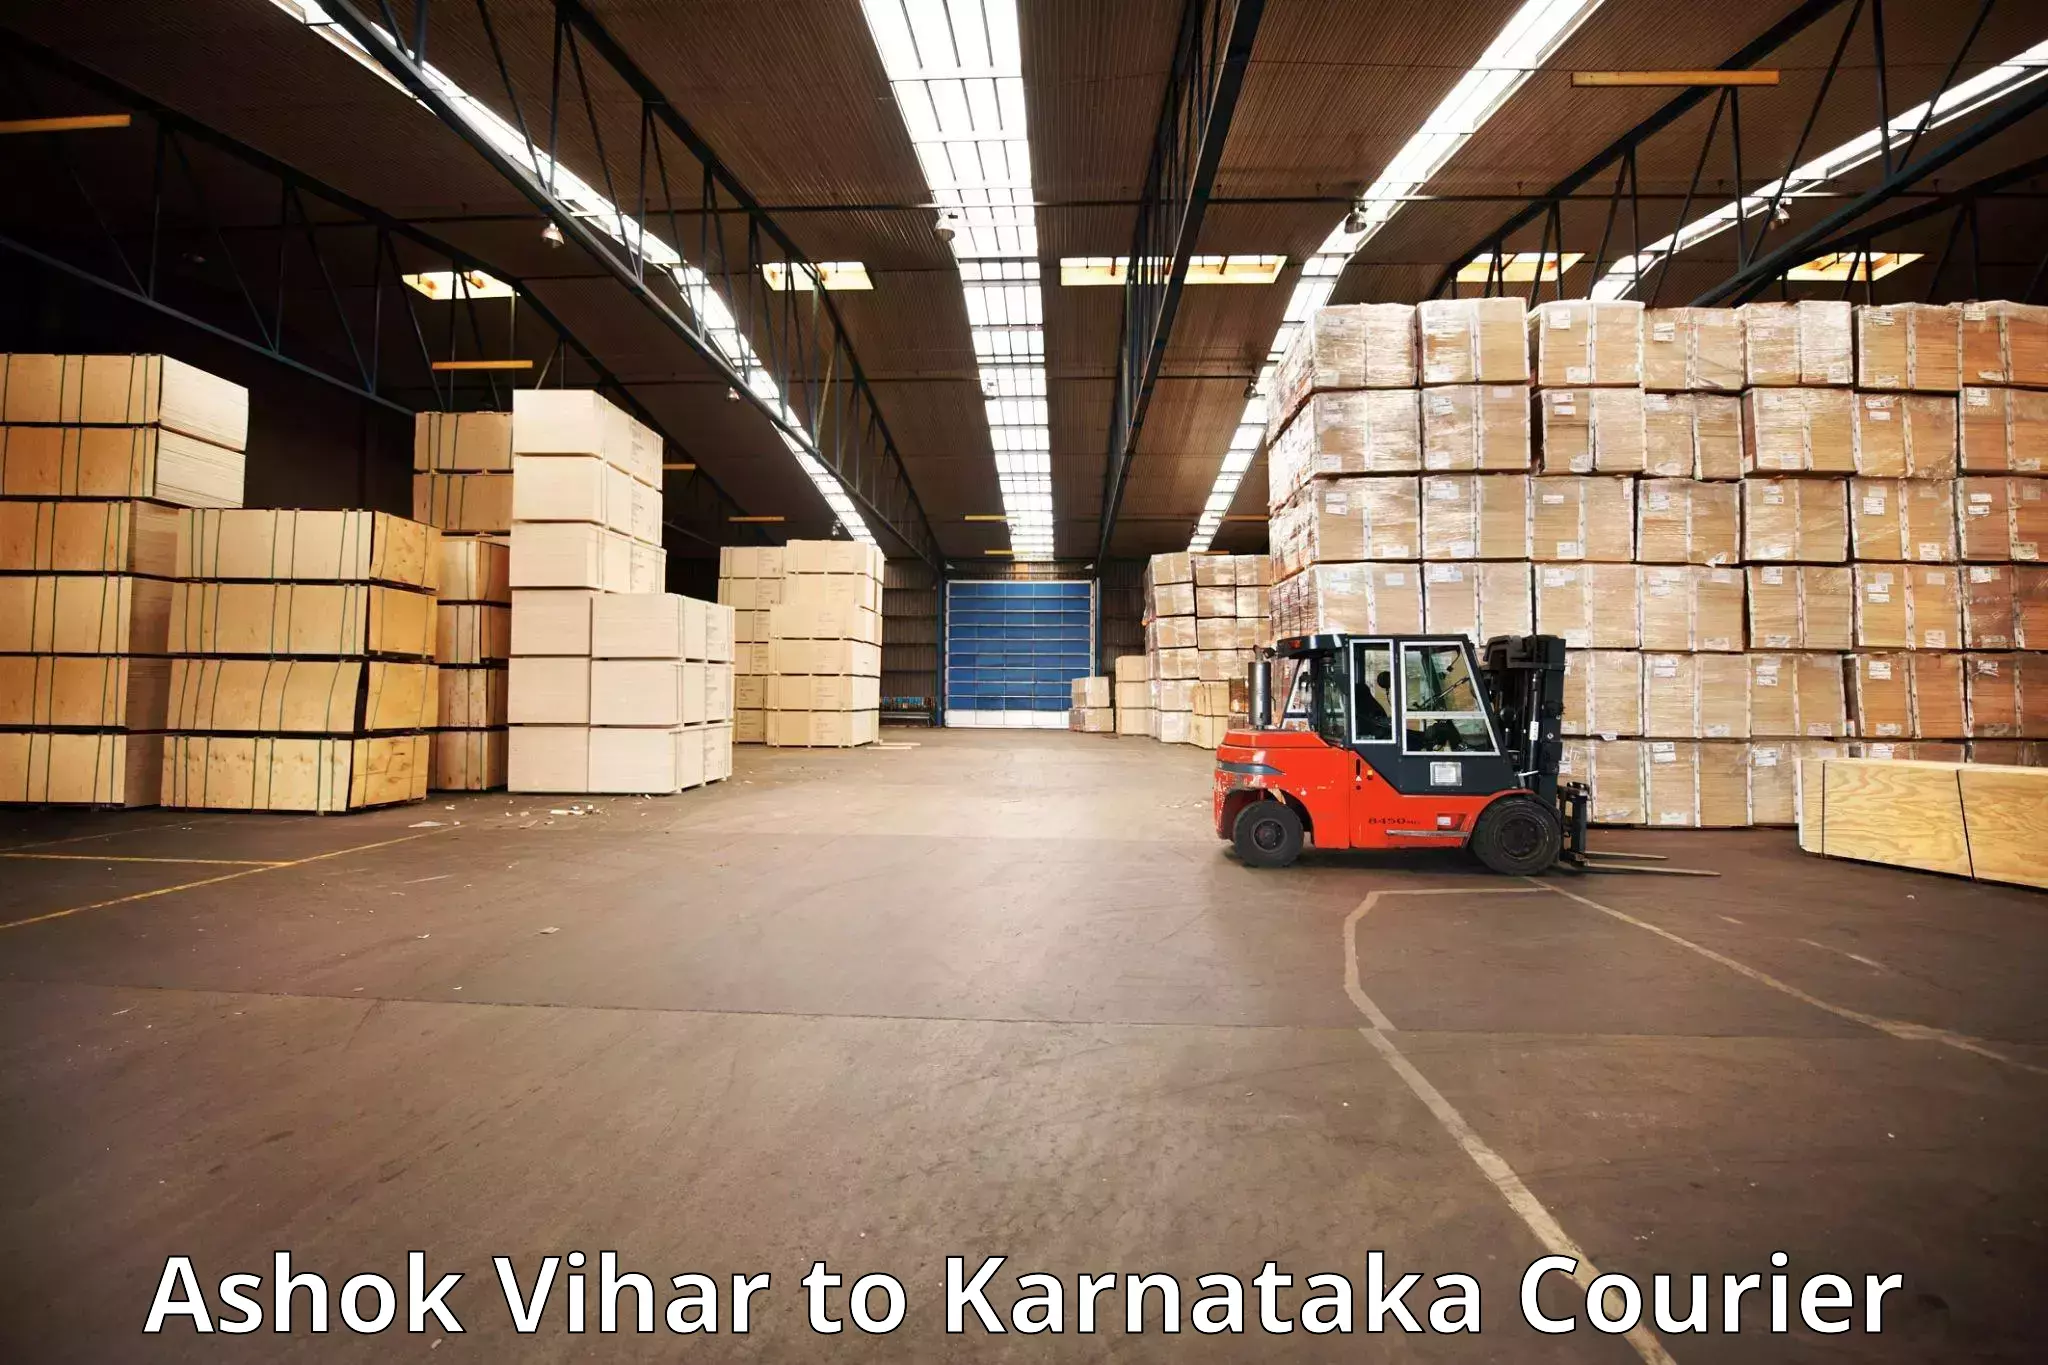 Baggage delivery optimization Ashok Vihar to Karnataka